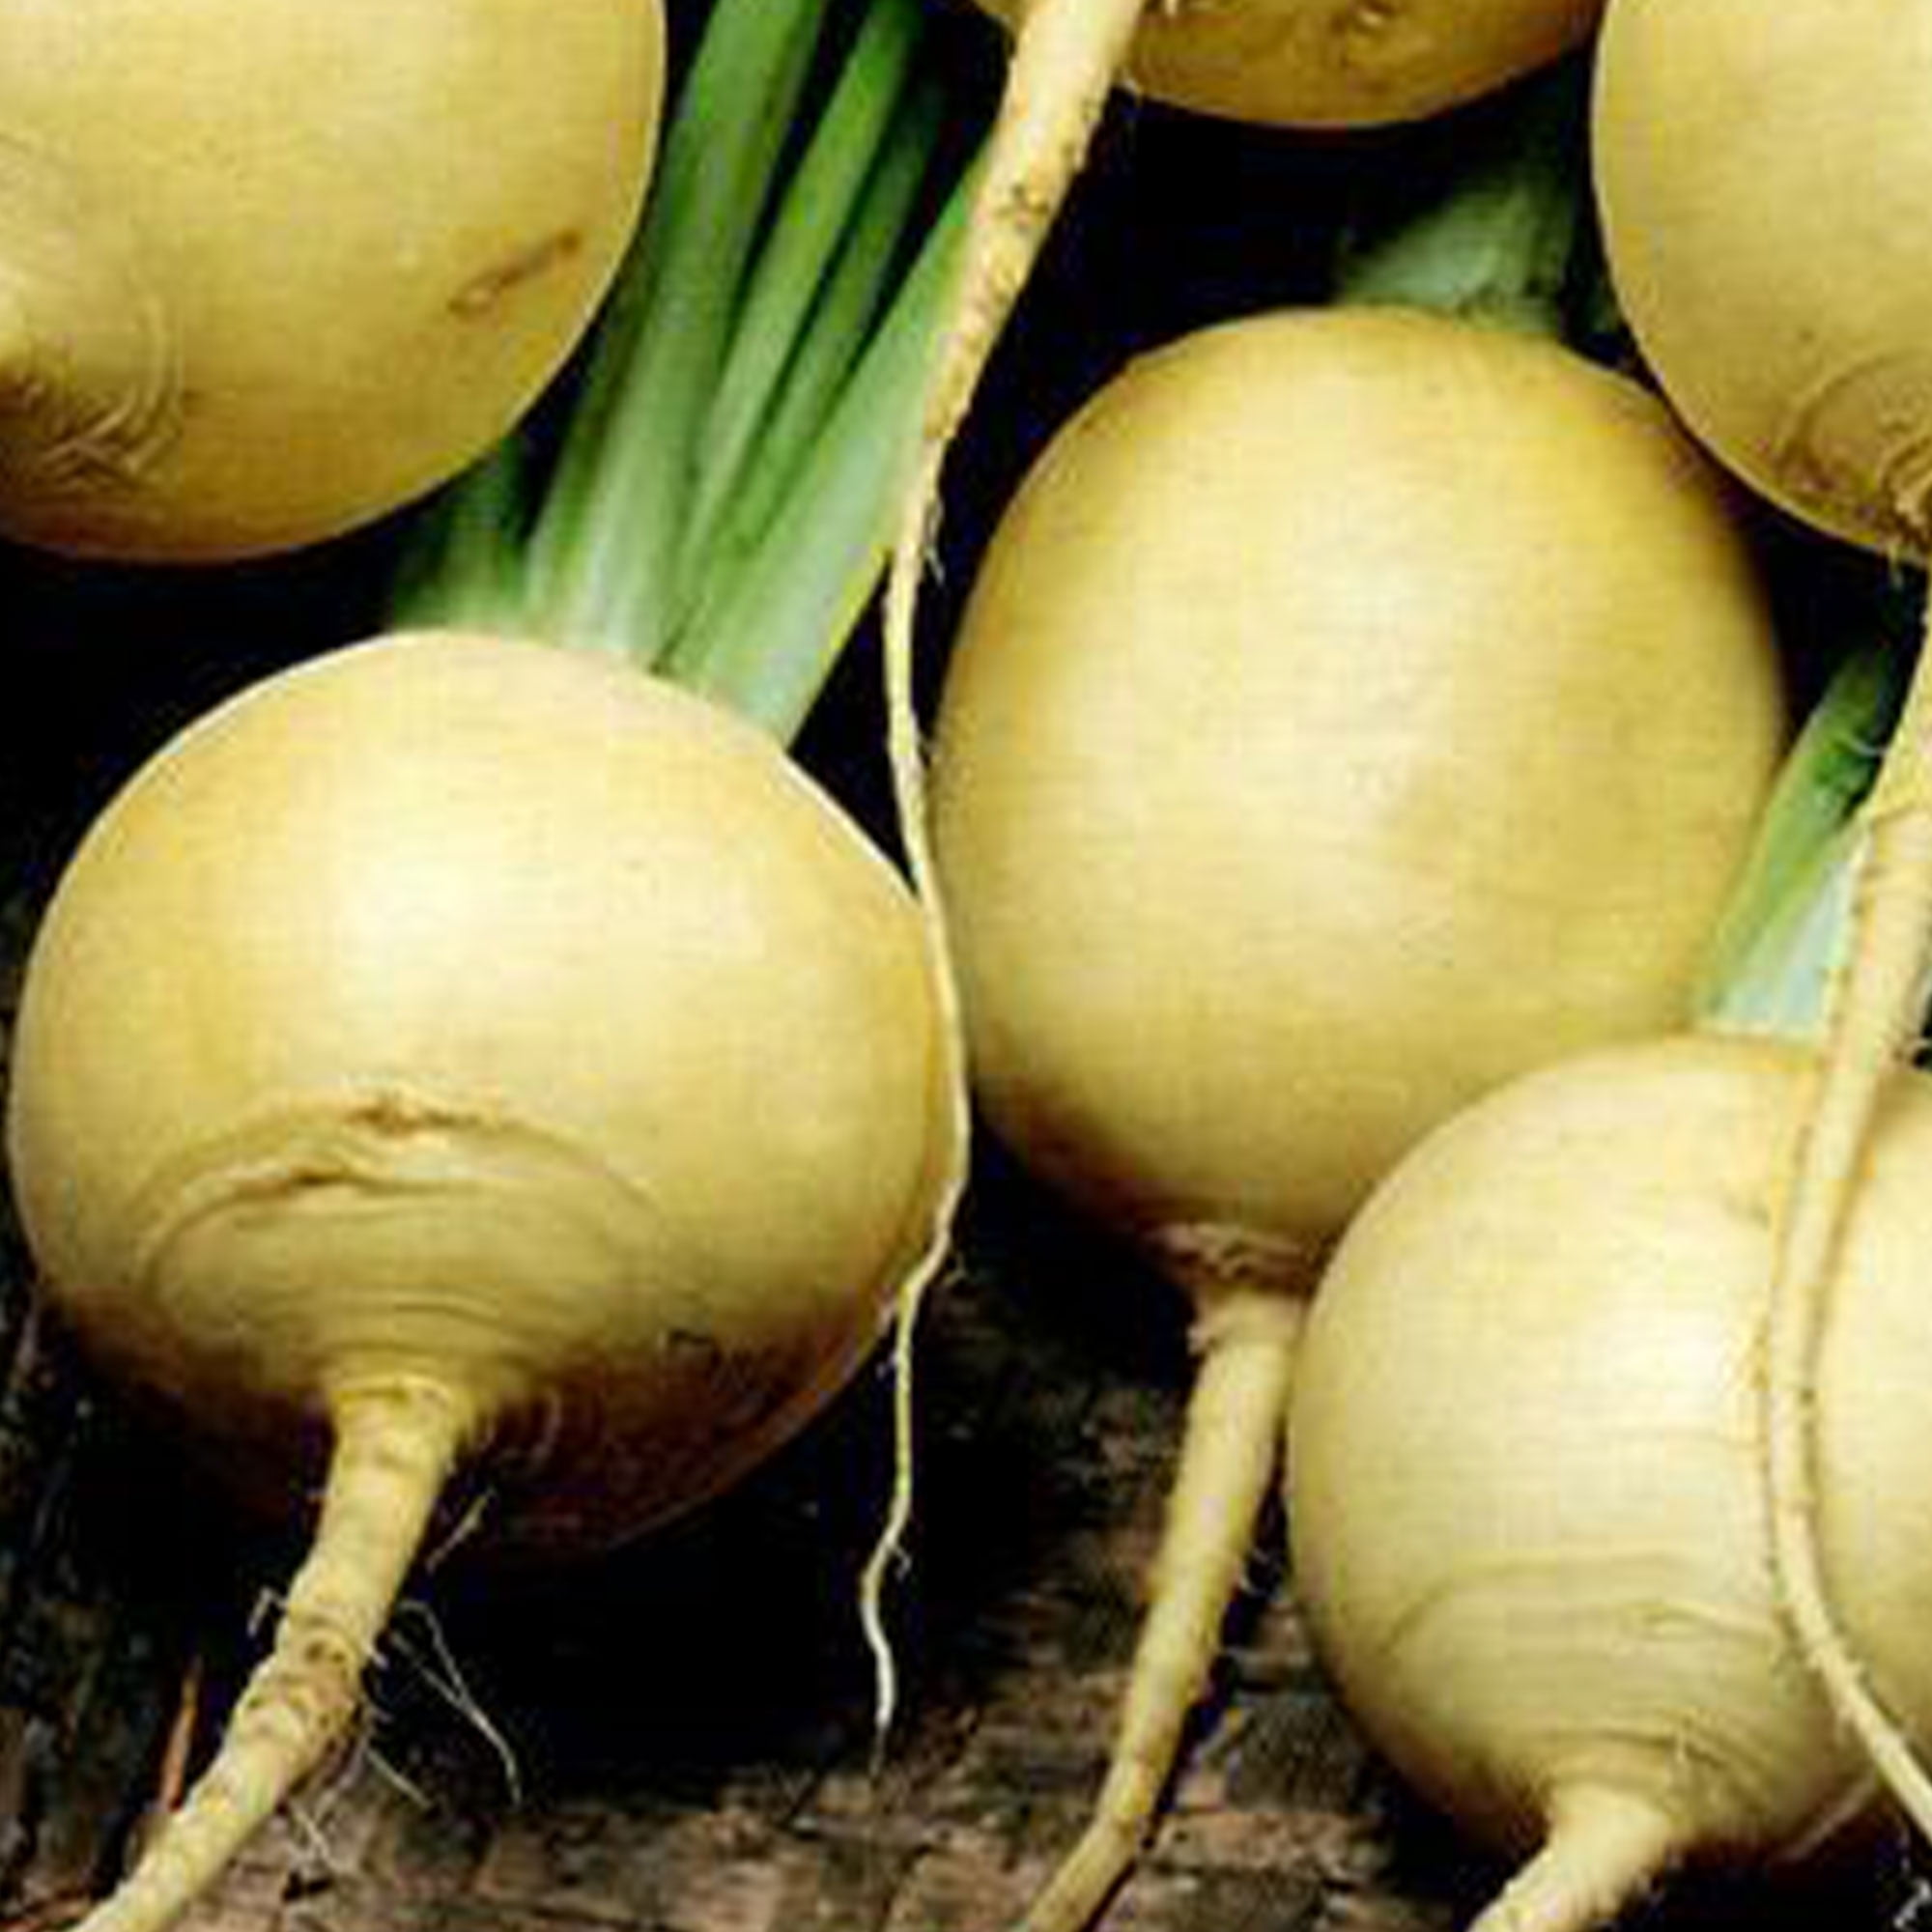 Turnip GOLDEN GLOBE /& PURPLE TOP 100 Seeds WINTER Vegetable Garden 2pks HEIRLOOM